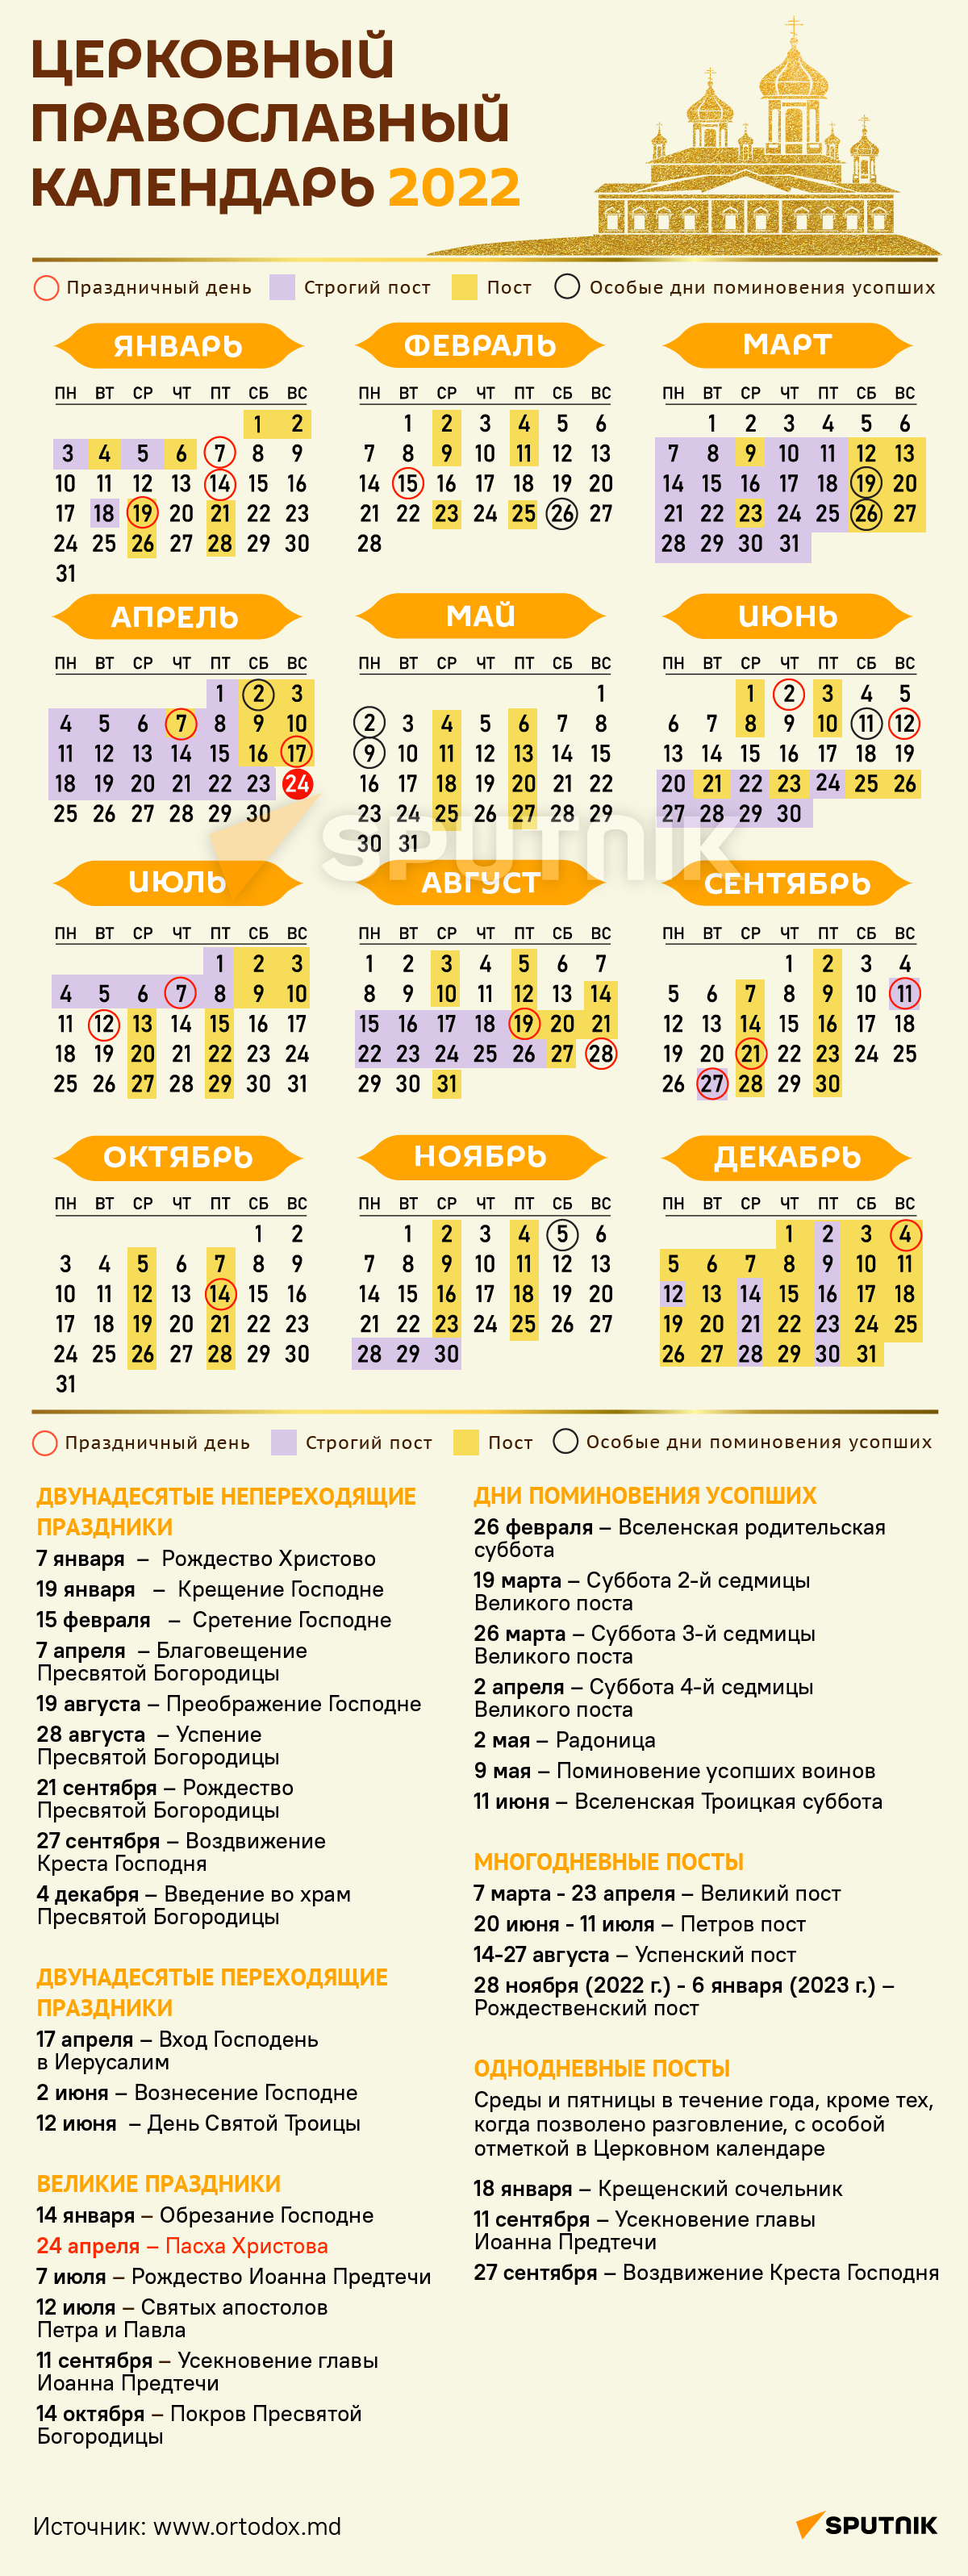 праздники в 2022 году календарь праздников православные